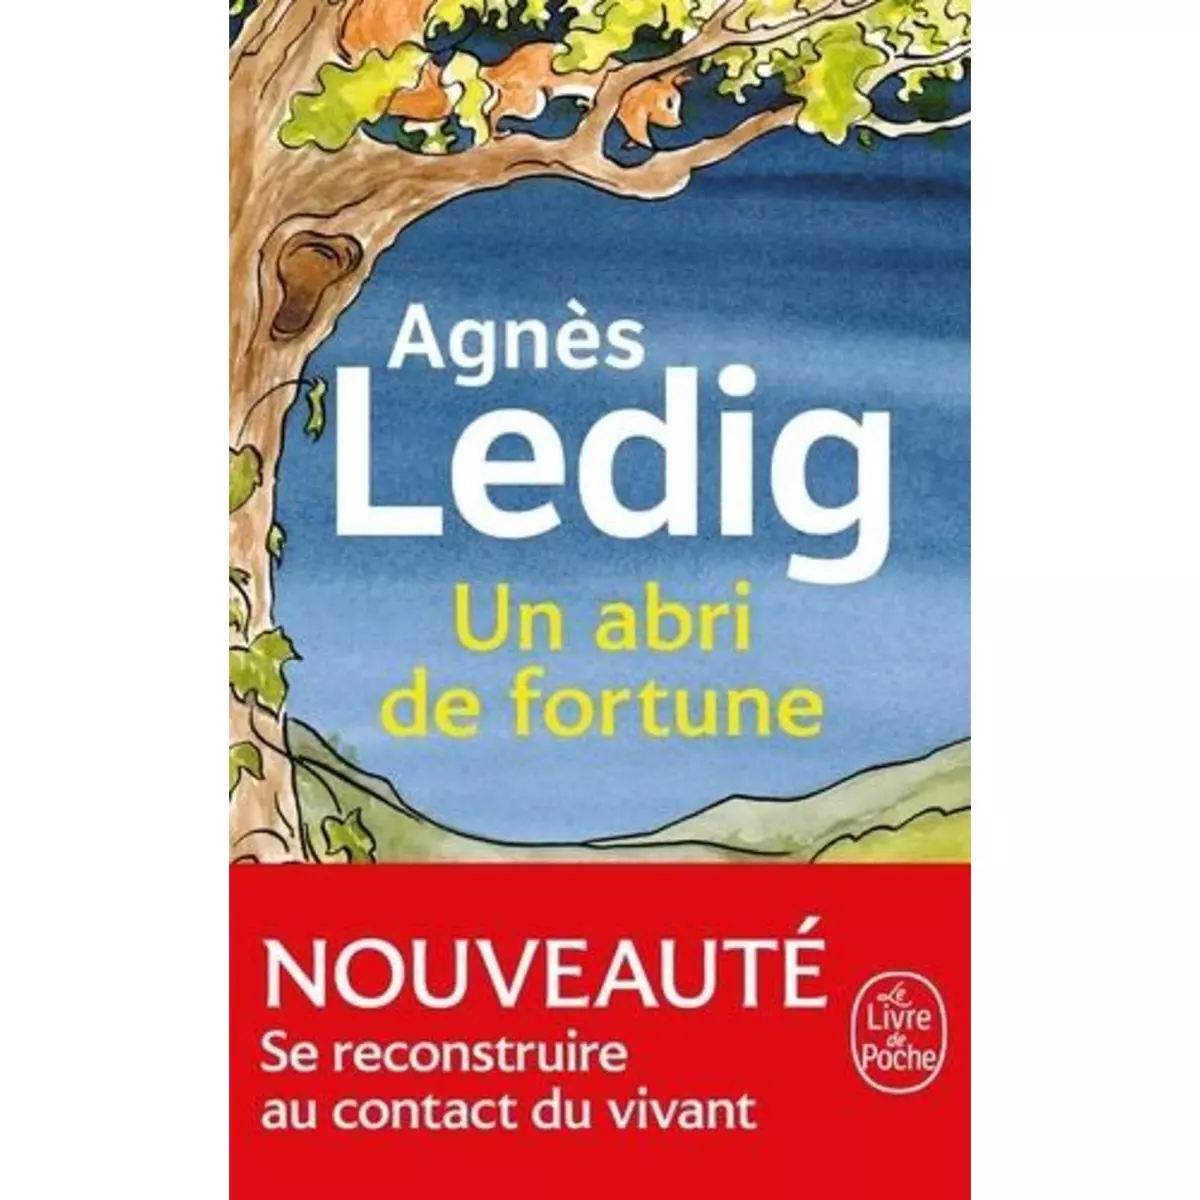  UN ABRI DE FORTUNE, Ledig Agnès